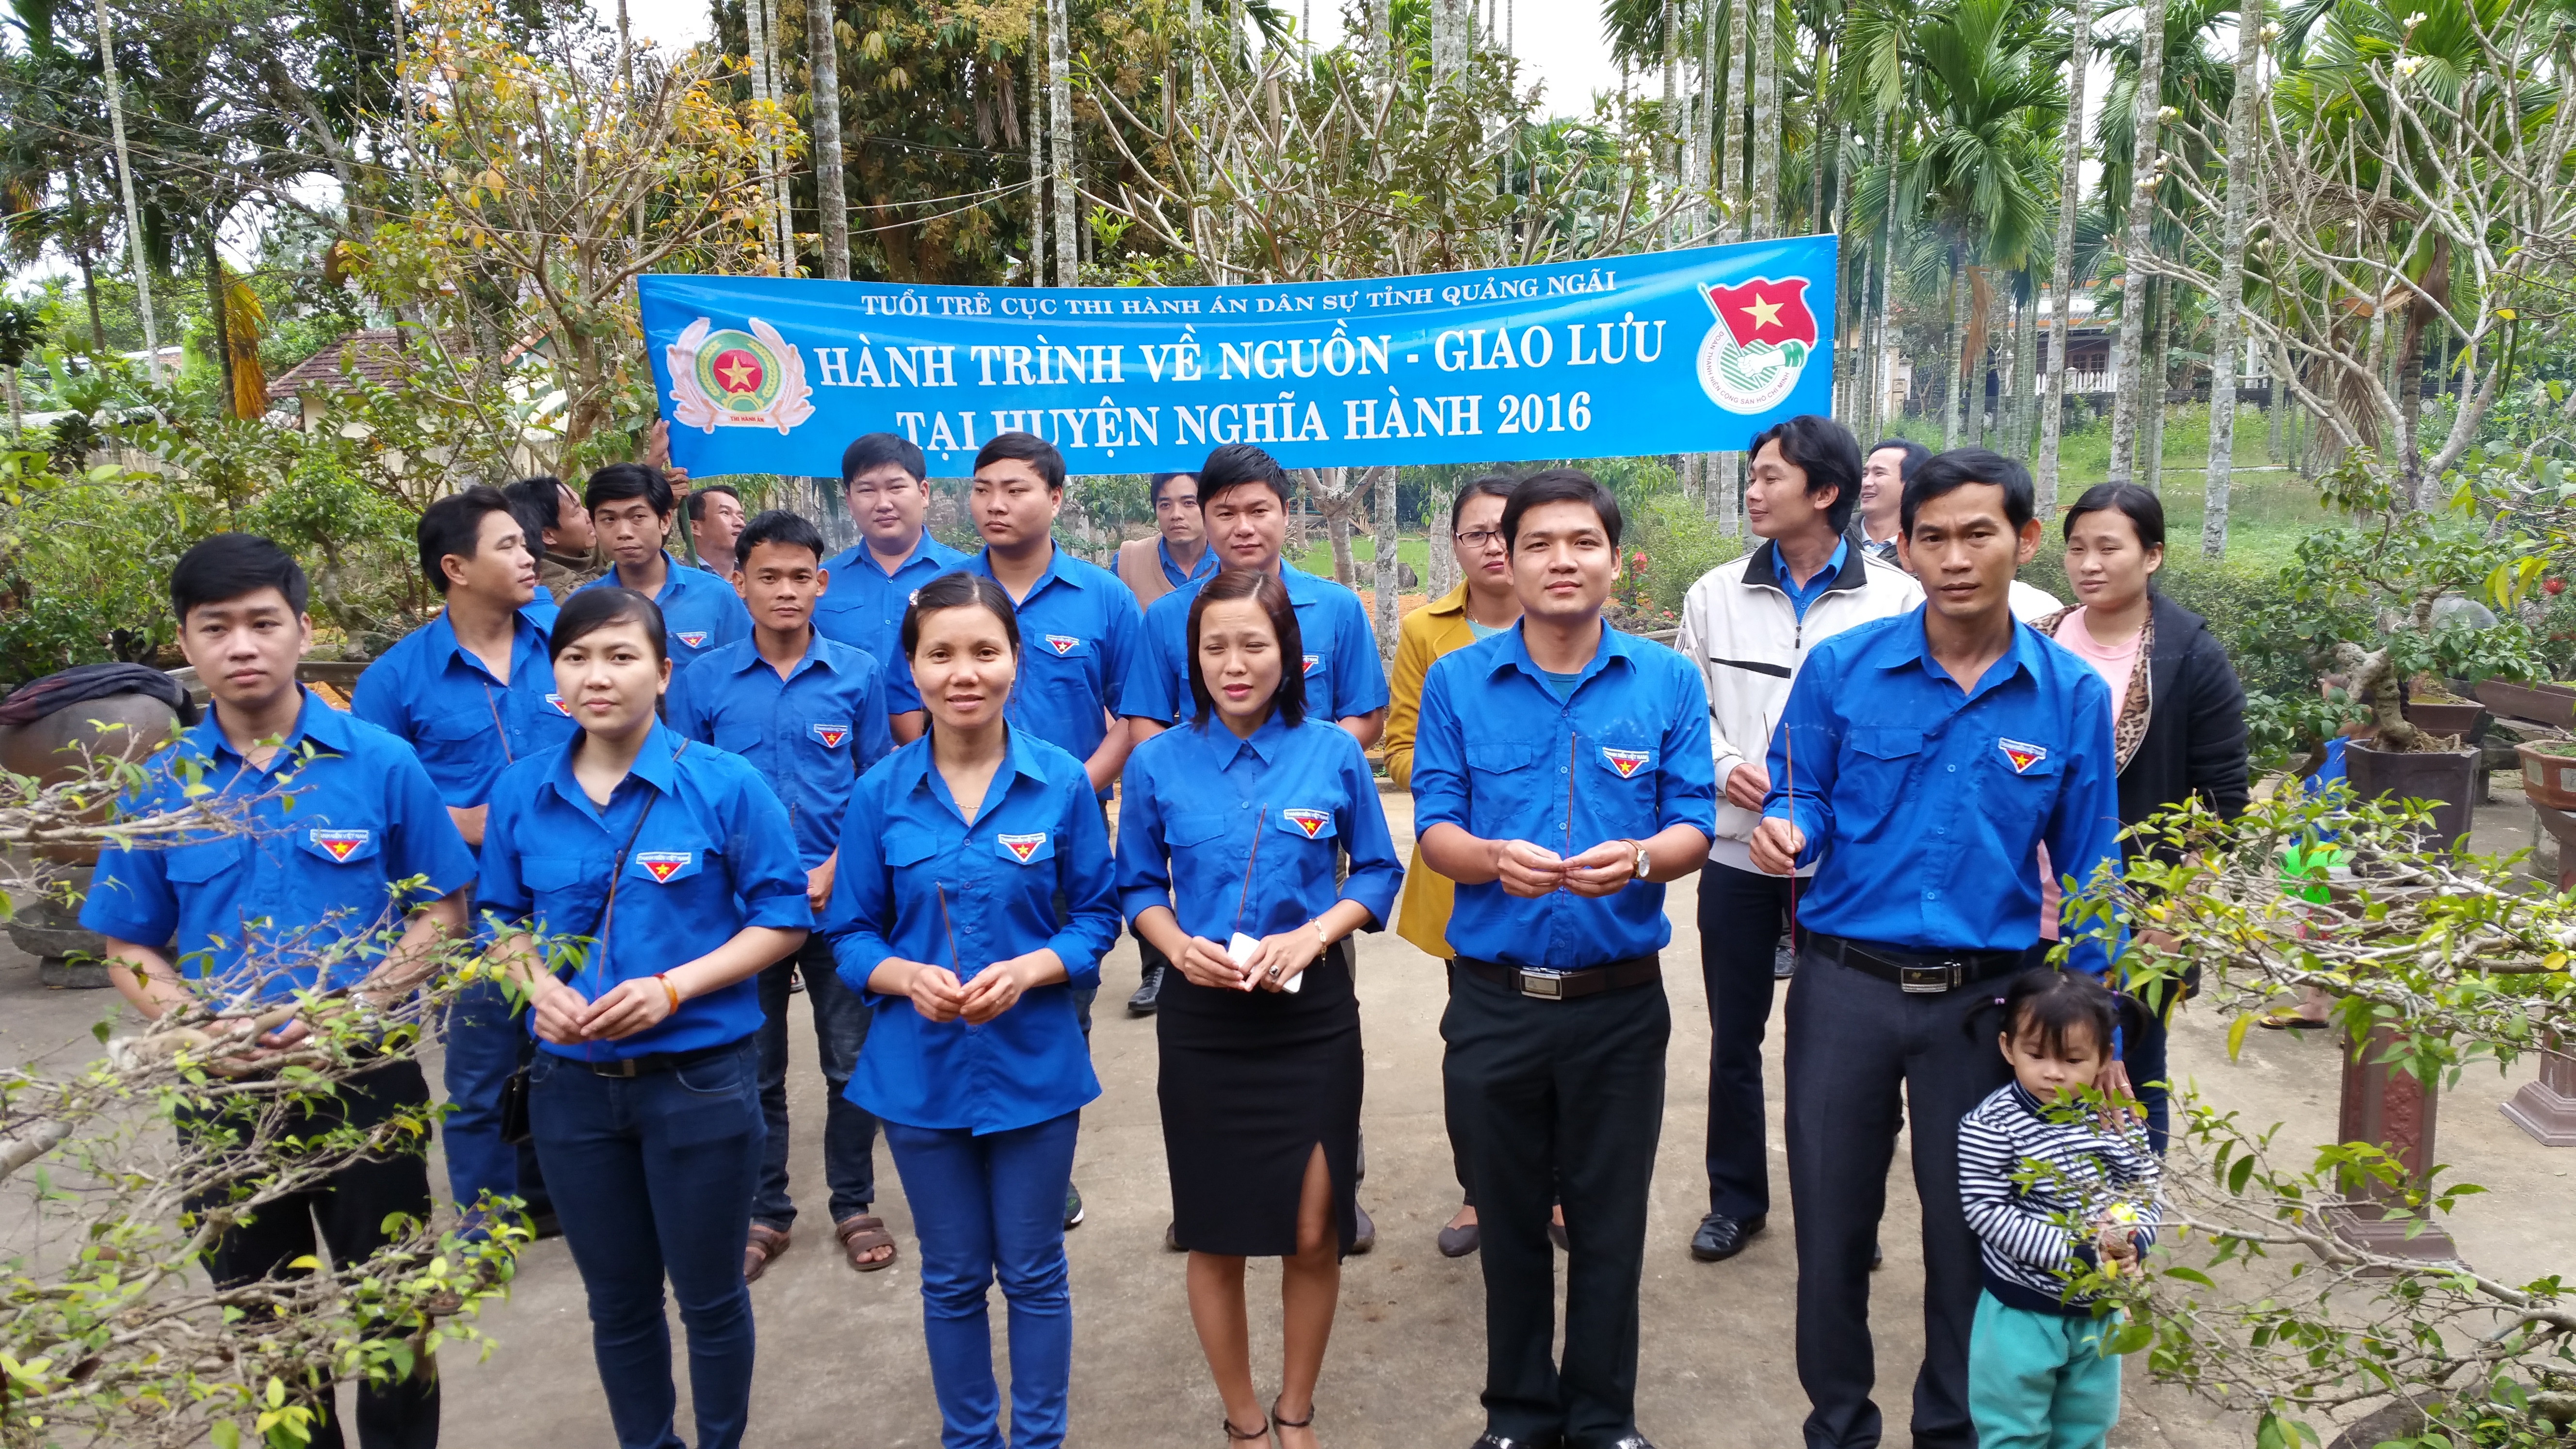 Tuổi trẻ Cục Thi hành án dân sự tỉnh Quảng Ngãi tổ chức hoạt động Về nguồn tháng thanh niên